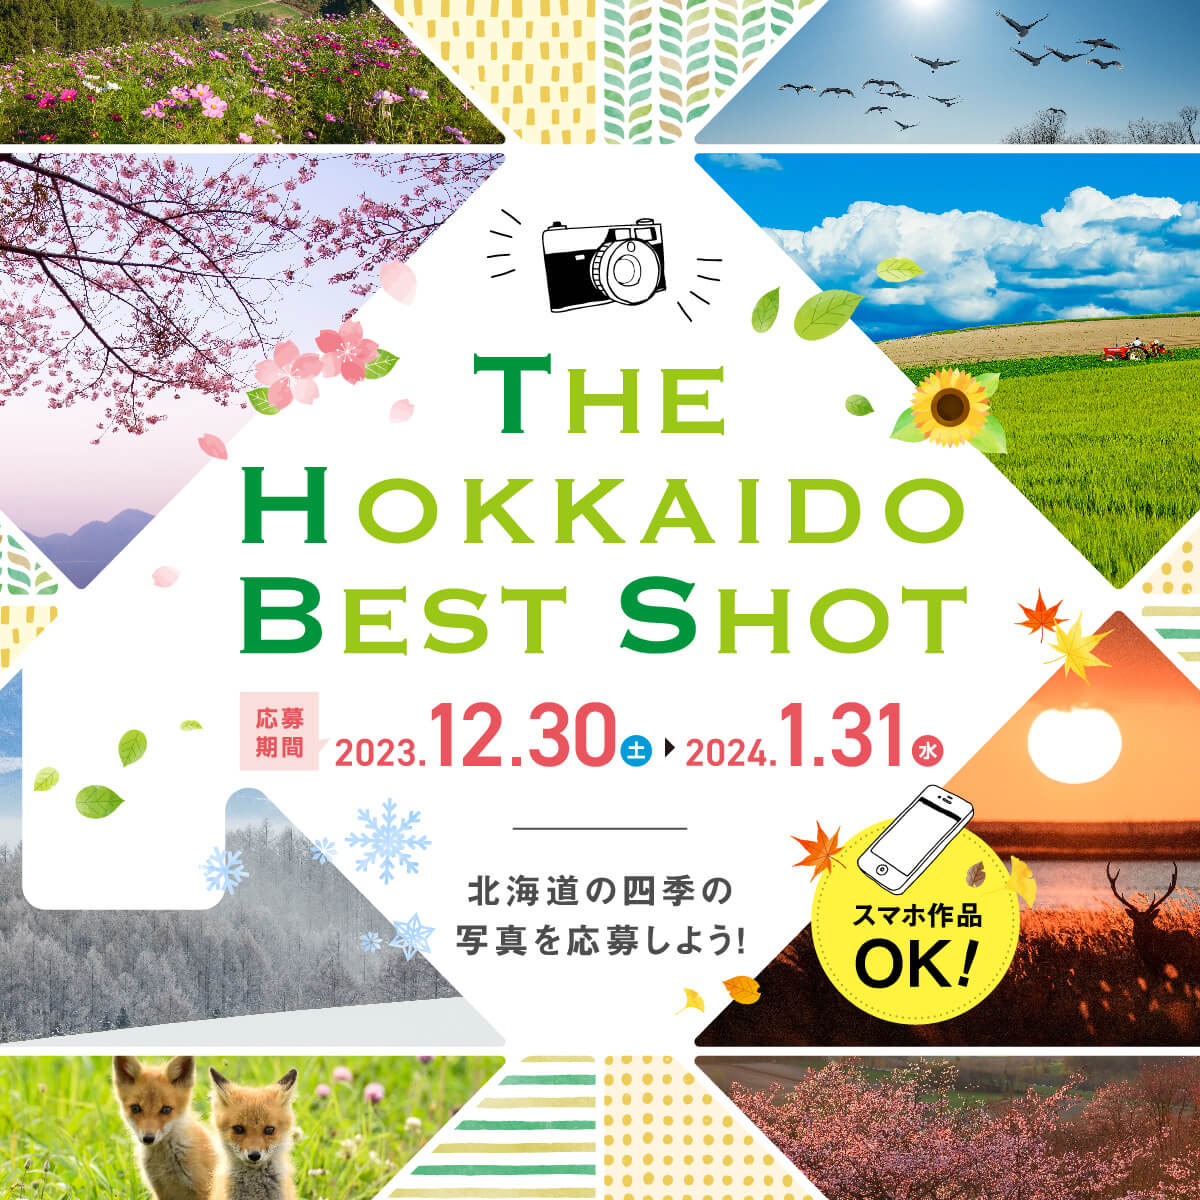 THE HOKKAIDO BEST SHOT